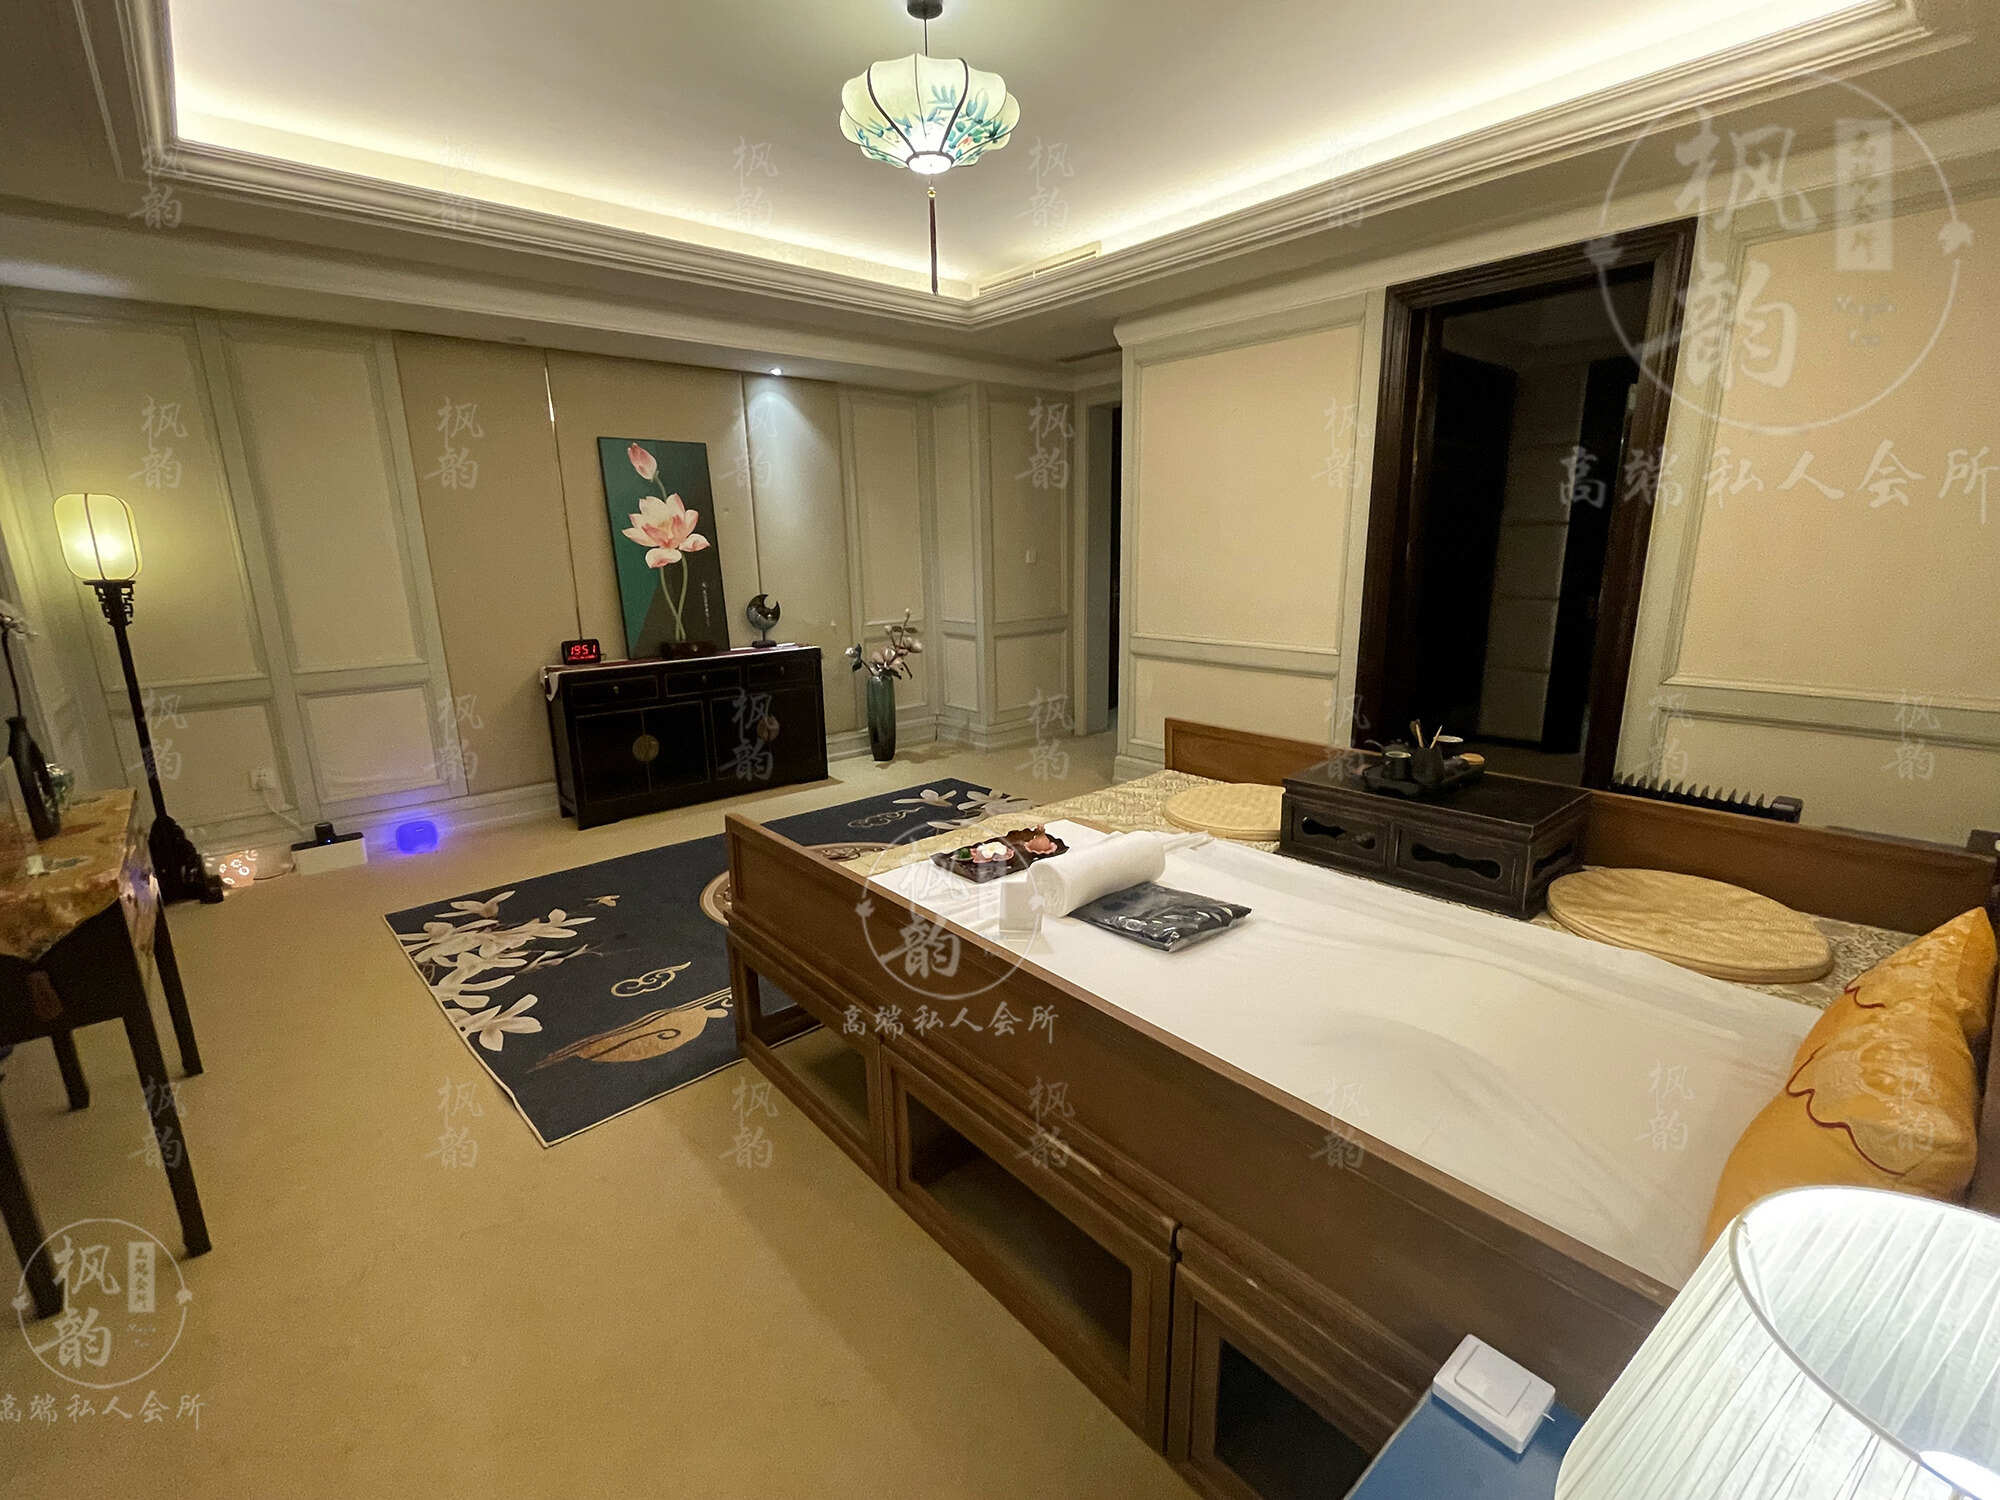 泉州天津渔阳鼓楼人气优选沐足会馆房间也很干净，舒适的spa体验